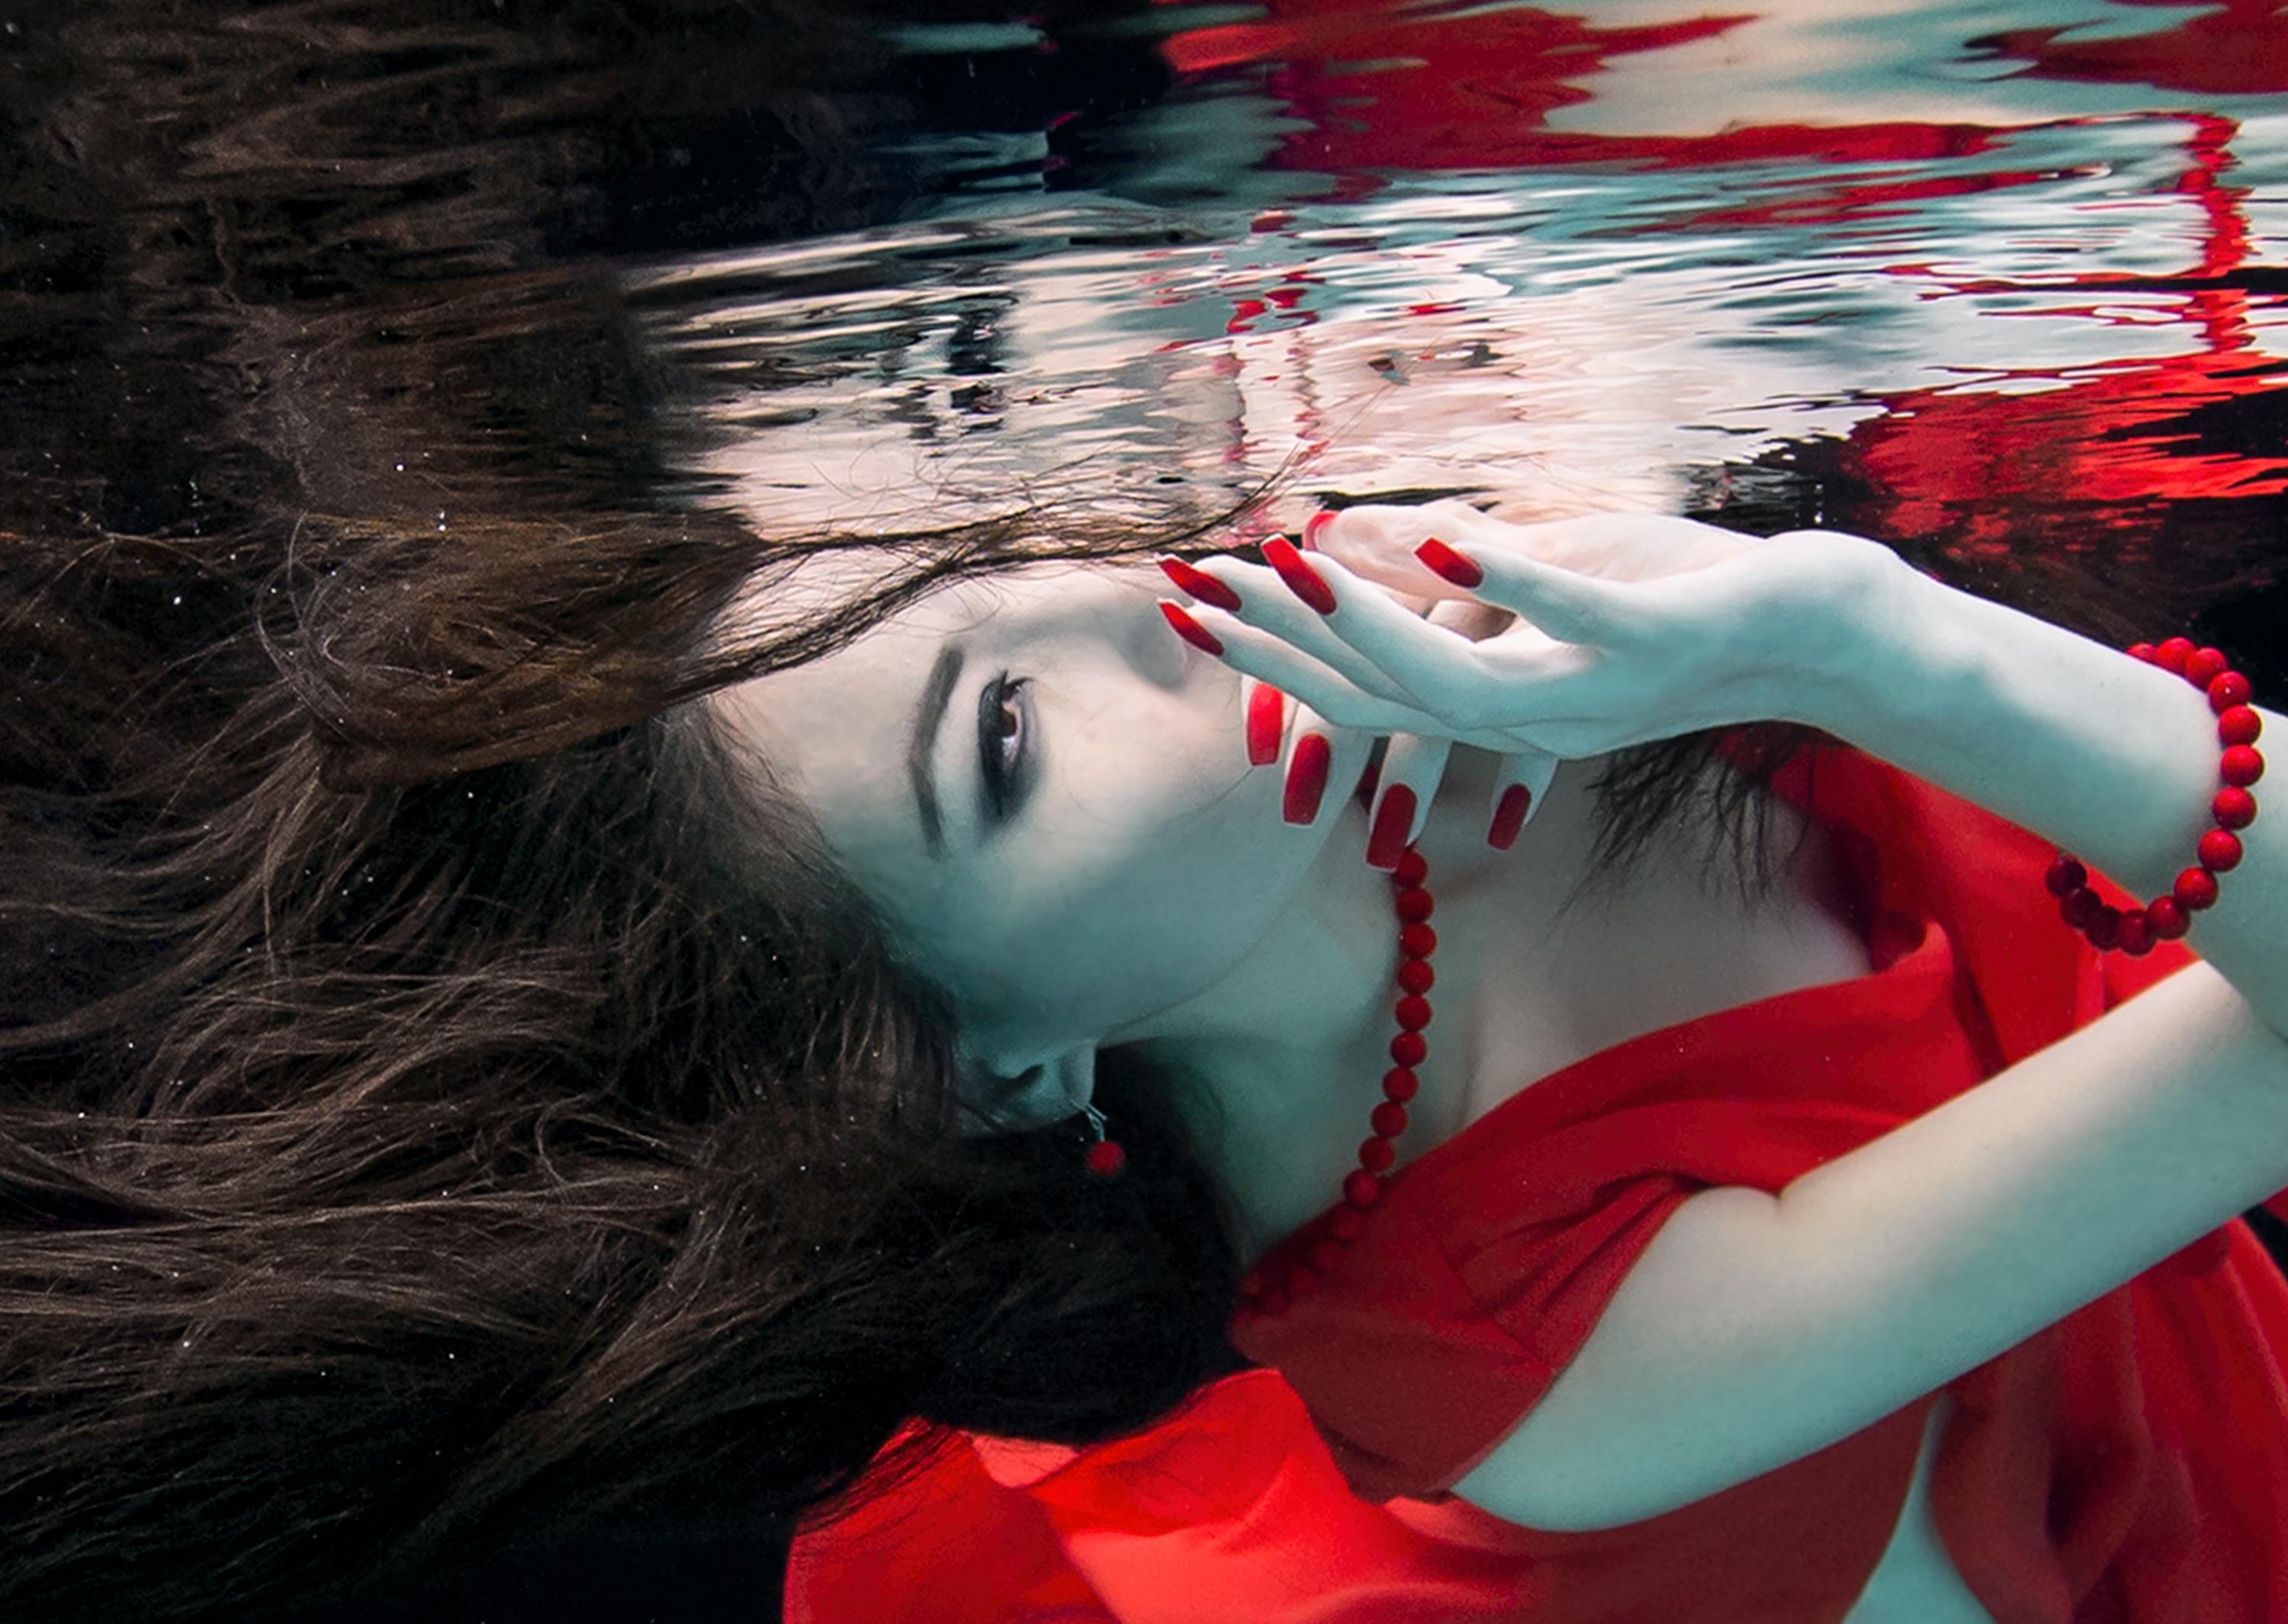 Unterwasserfoto eines hübschen Mädchens mit dunklen Haaren in rotem Kleid.

Originalabzug in Galeriequalität auf Archiv-Metallic-Papier, vom Künstler signiert.
Papierformat: 36